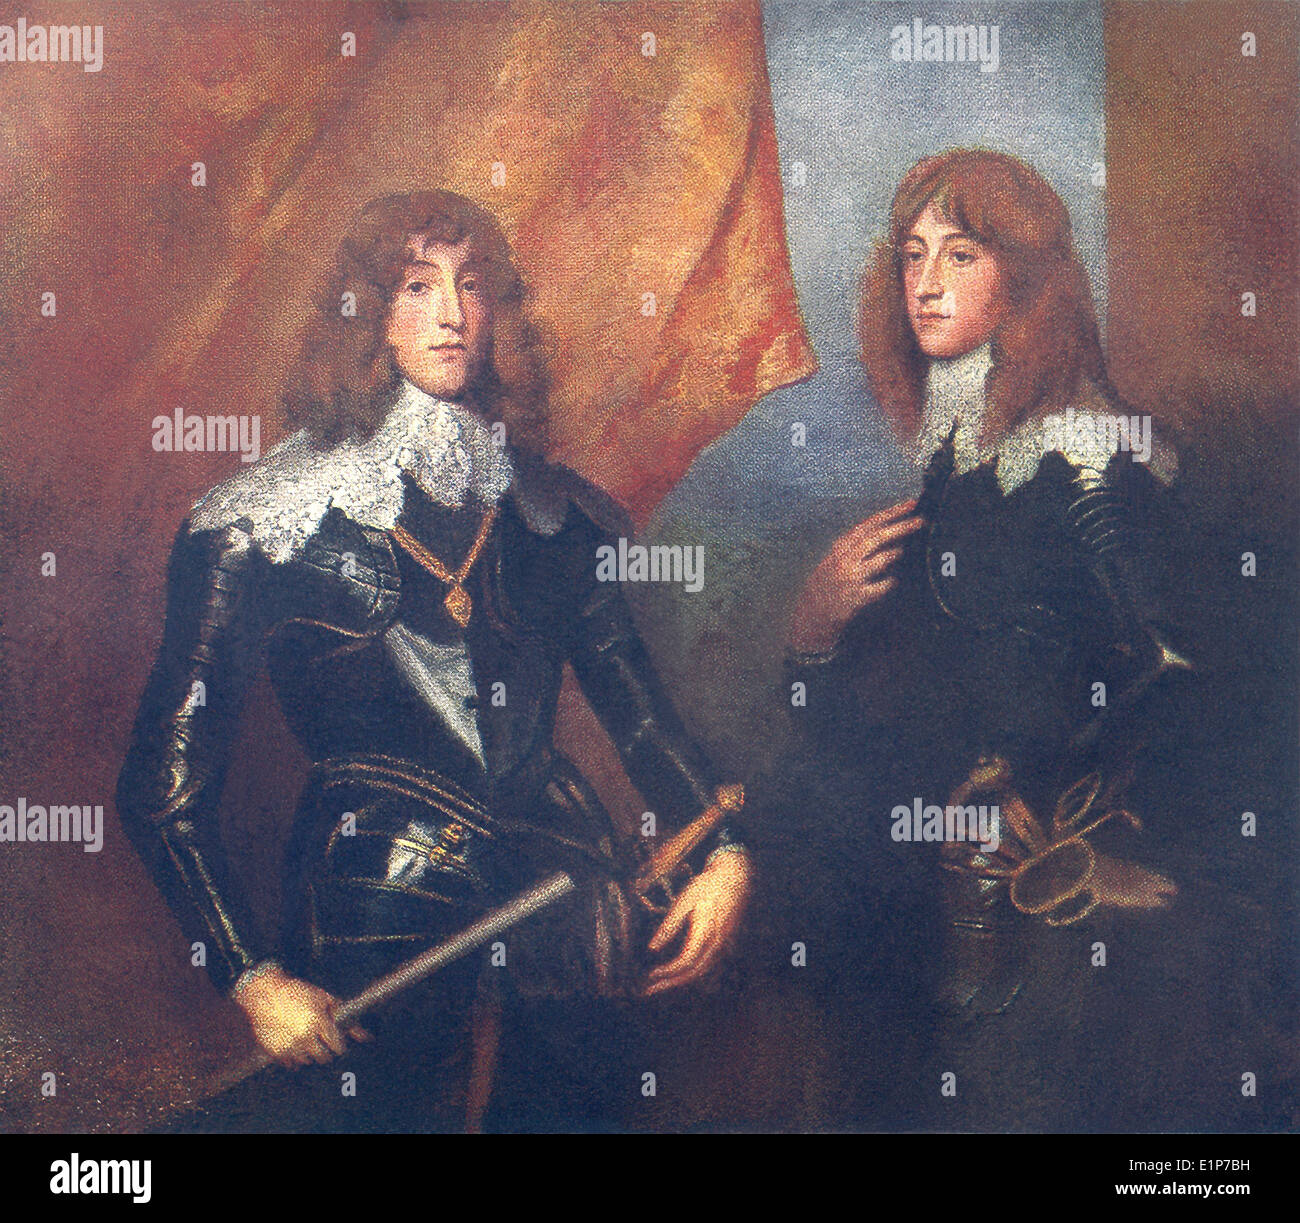 Questo ritratto mostra Charles Louis della Baviera (sinistra) e suo fratello Robert, che divenne duca di Cumberland. Foto Stock